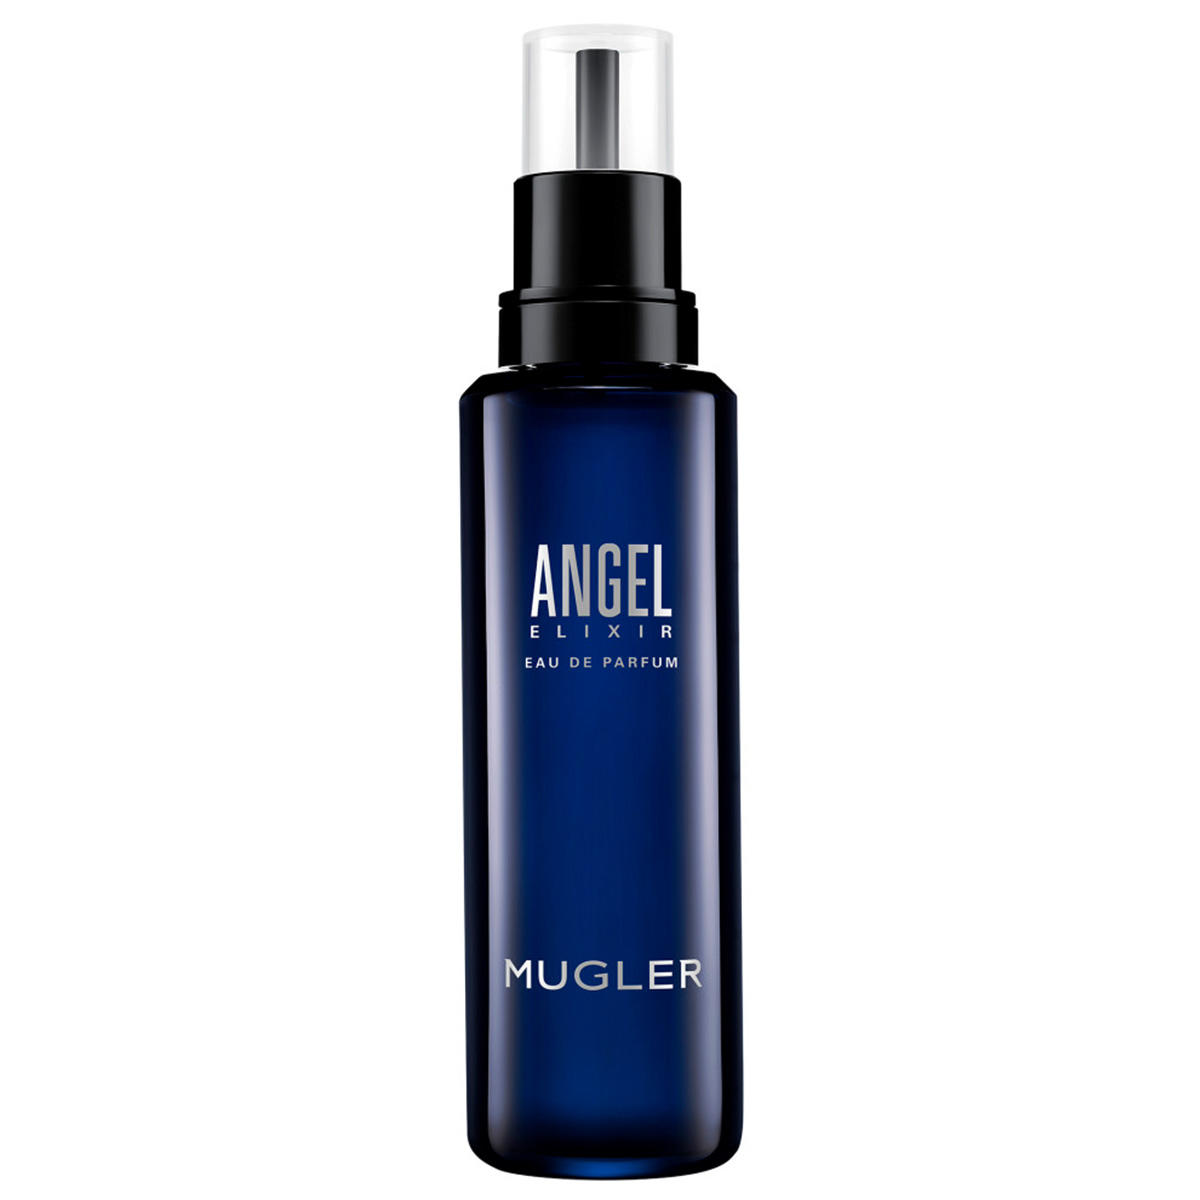 MUGLER Angel Botella recargable de agua de perfume Elixir 100 ml - 1